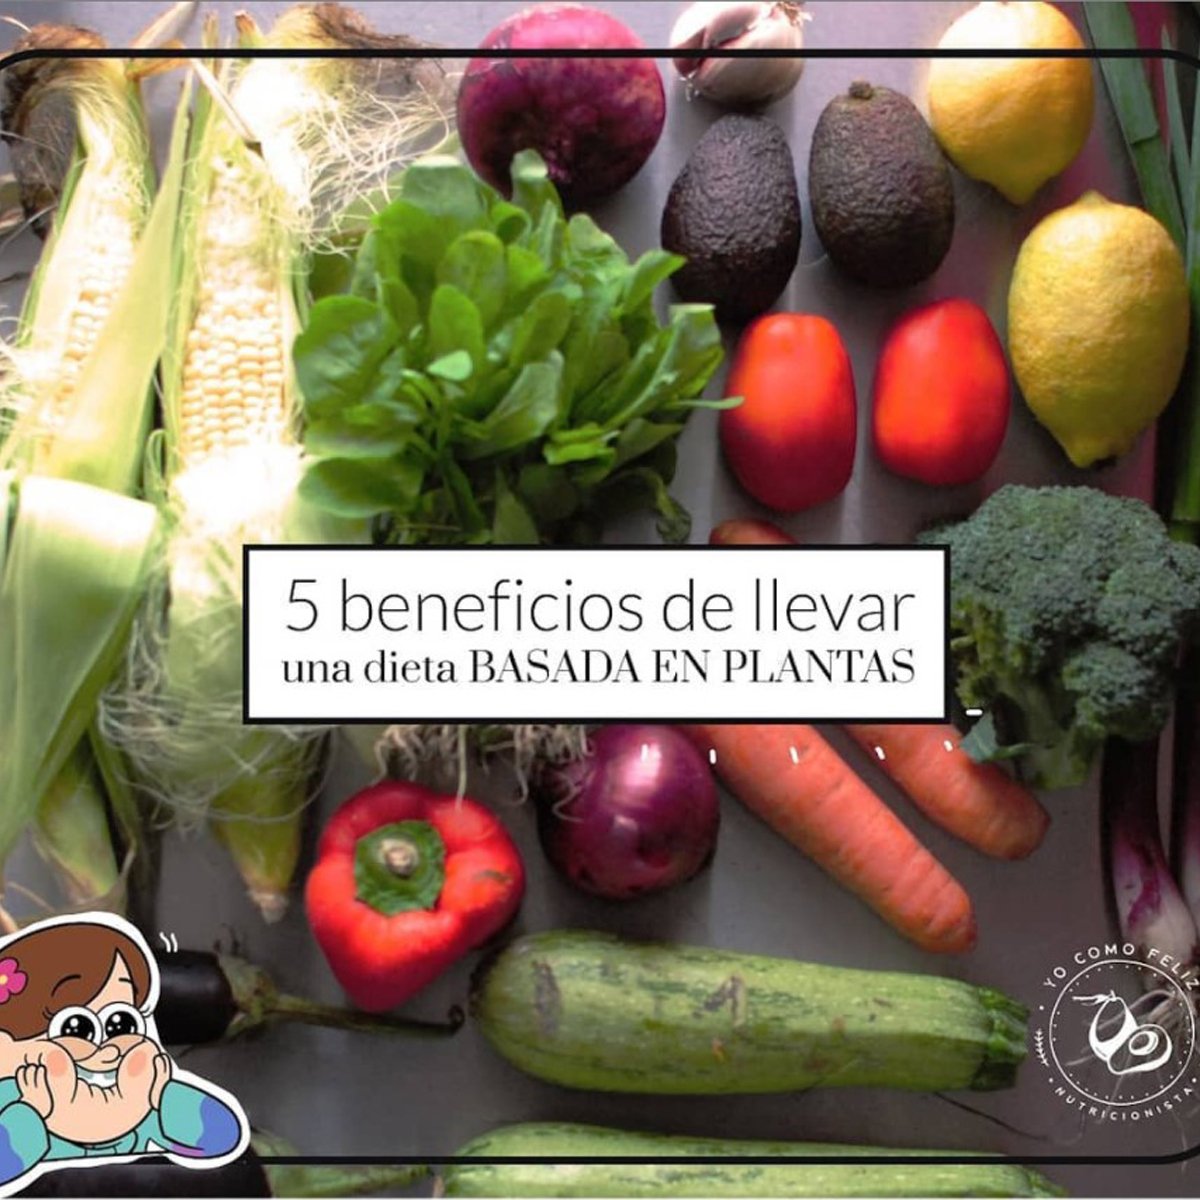 5 Beneficios de llevar una dieta basada en plantas